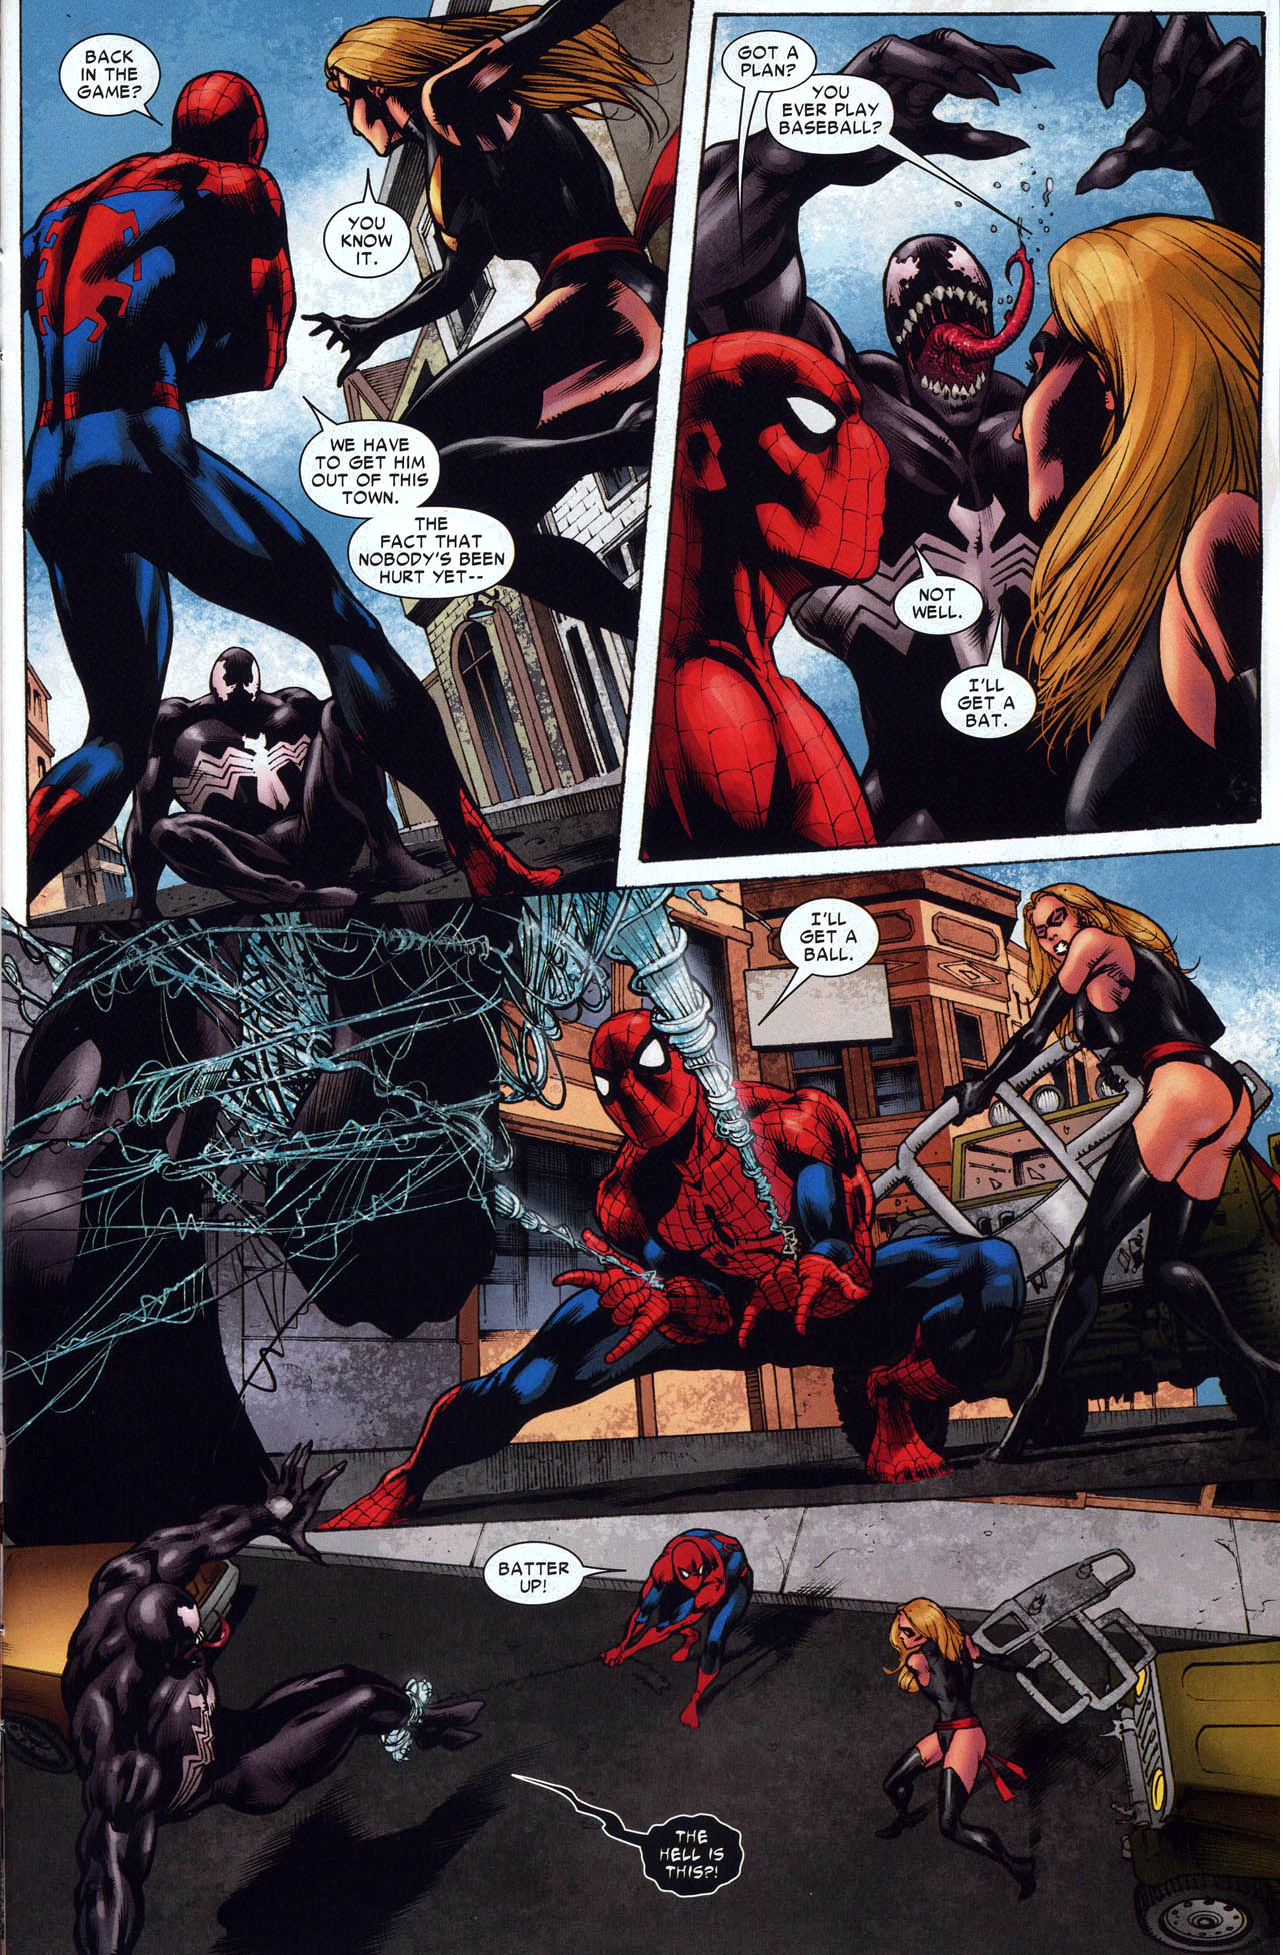 spider-man and miss marvel vs venom